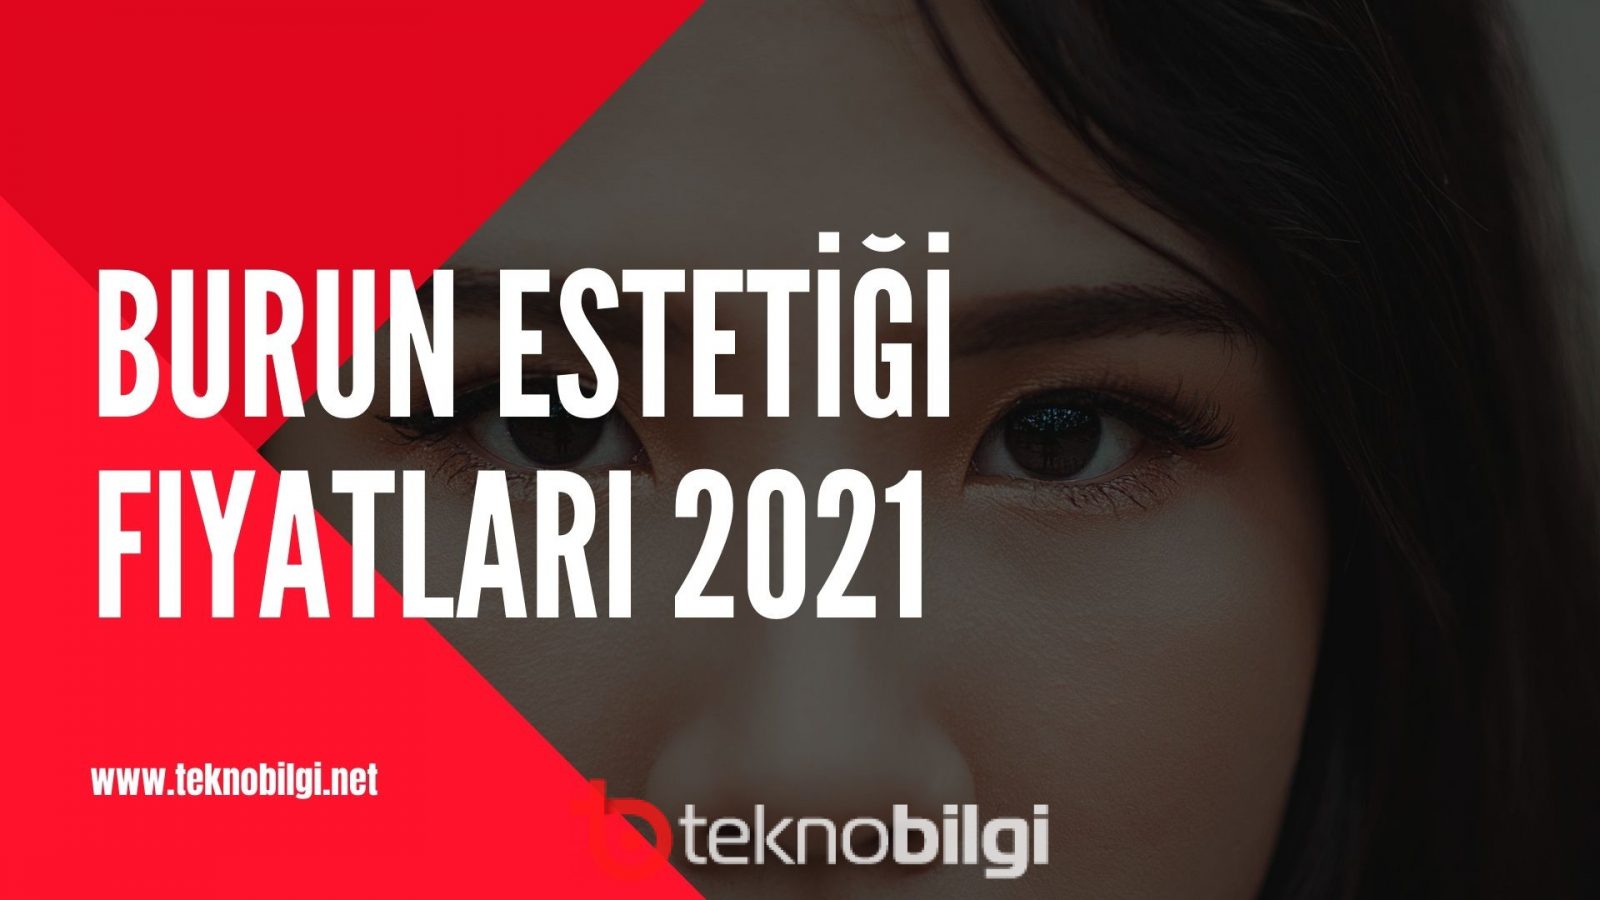 Burun Estetiği Fiyatları 2022 - Burun Ucu Estetiği Fiyatları Ankara İstanbul Devlet Hastanesi SSK Basit İzmir Dolgu Burun